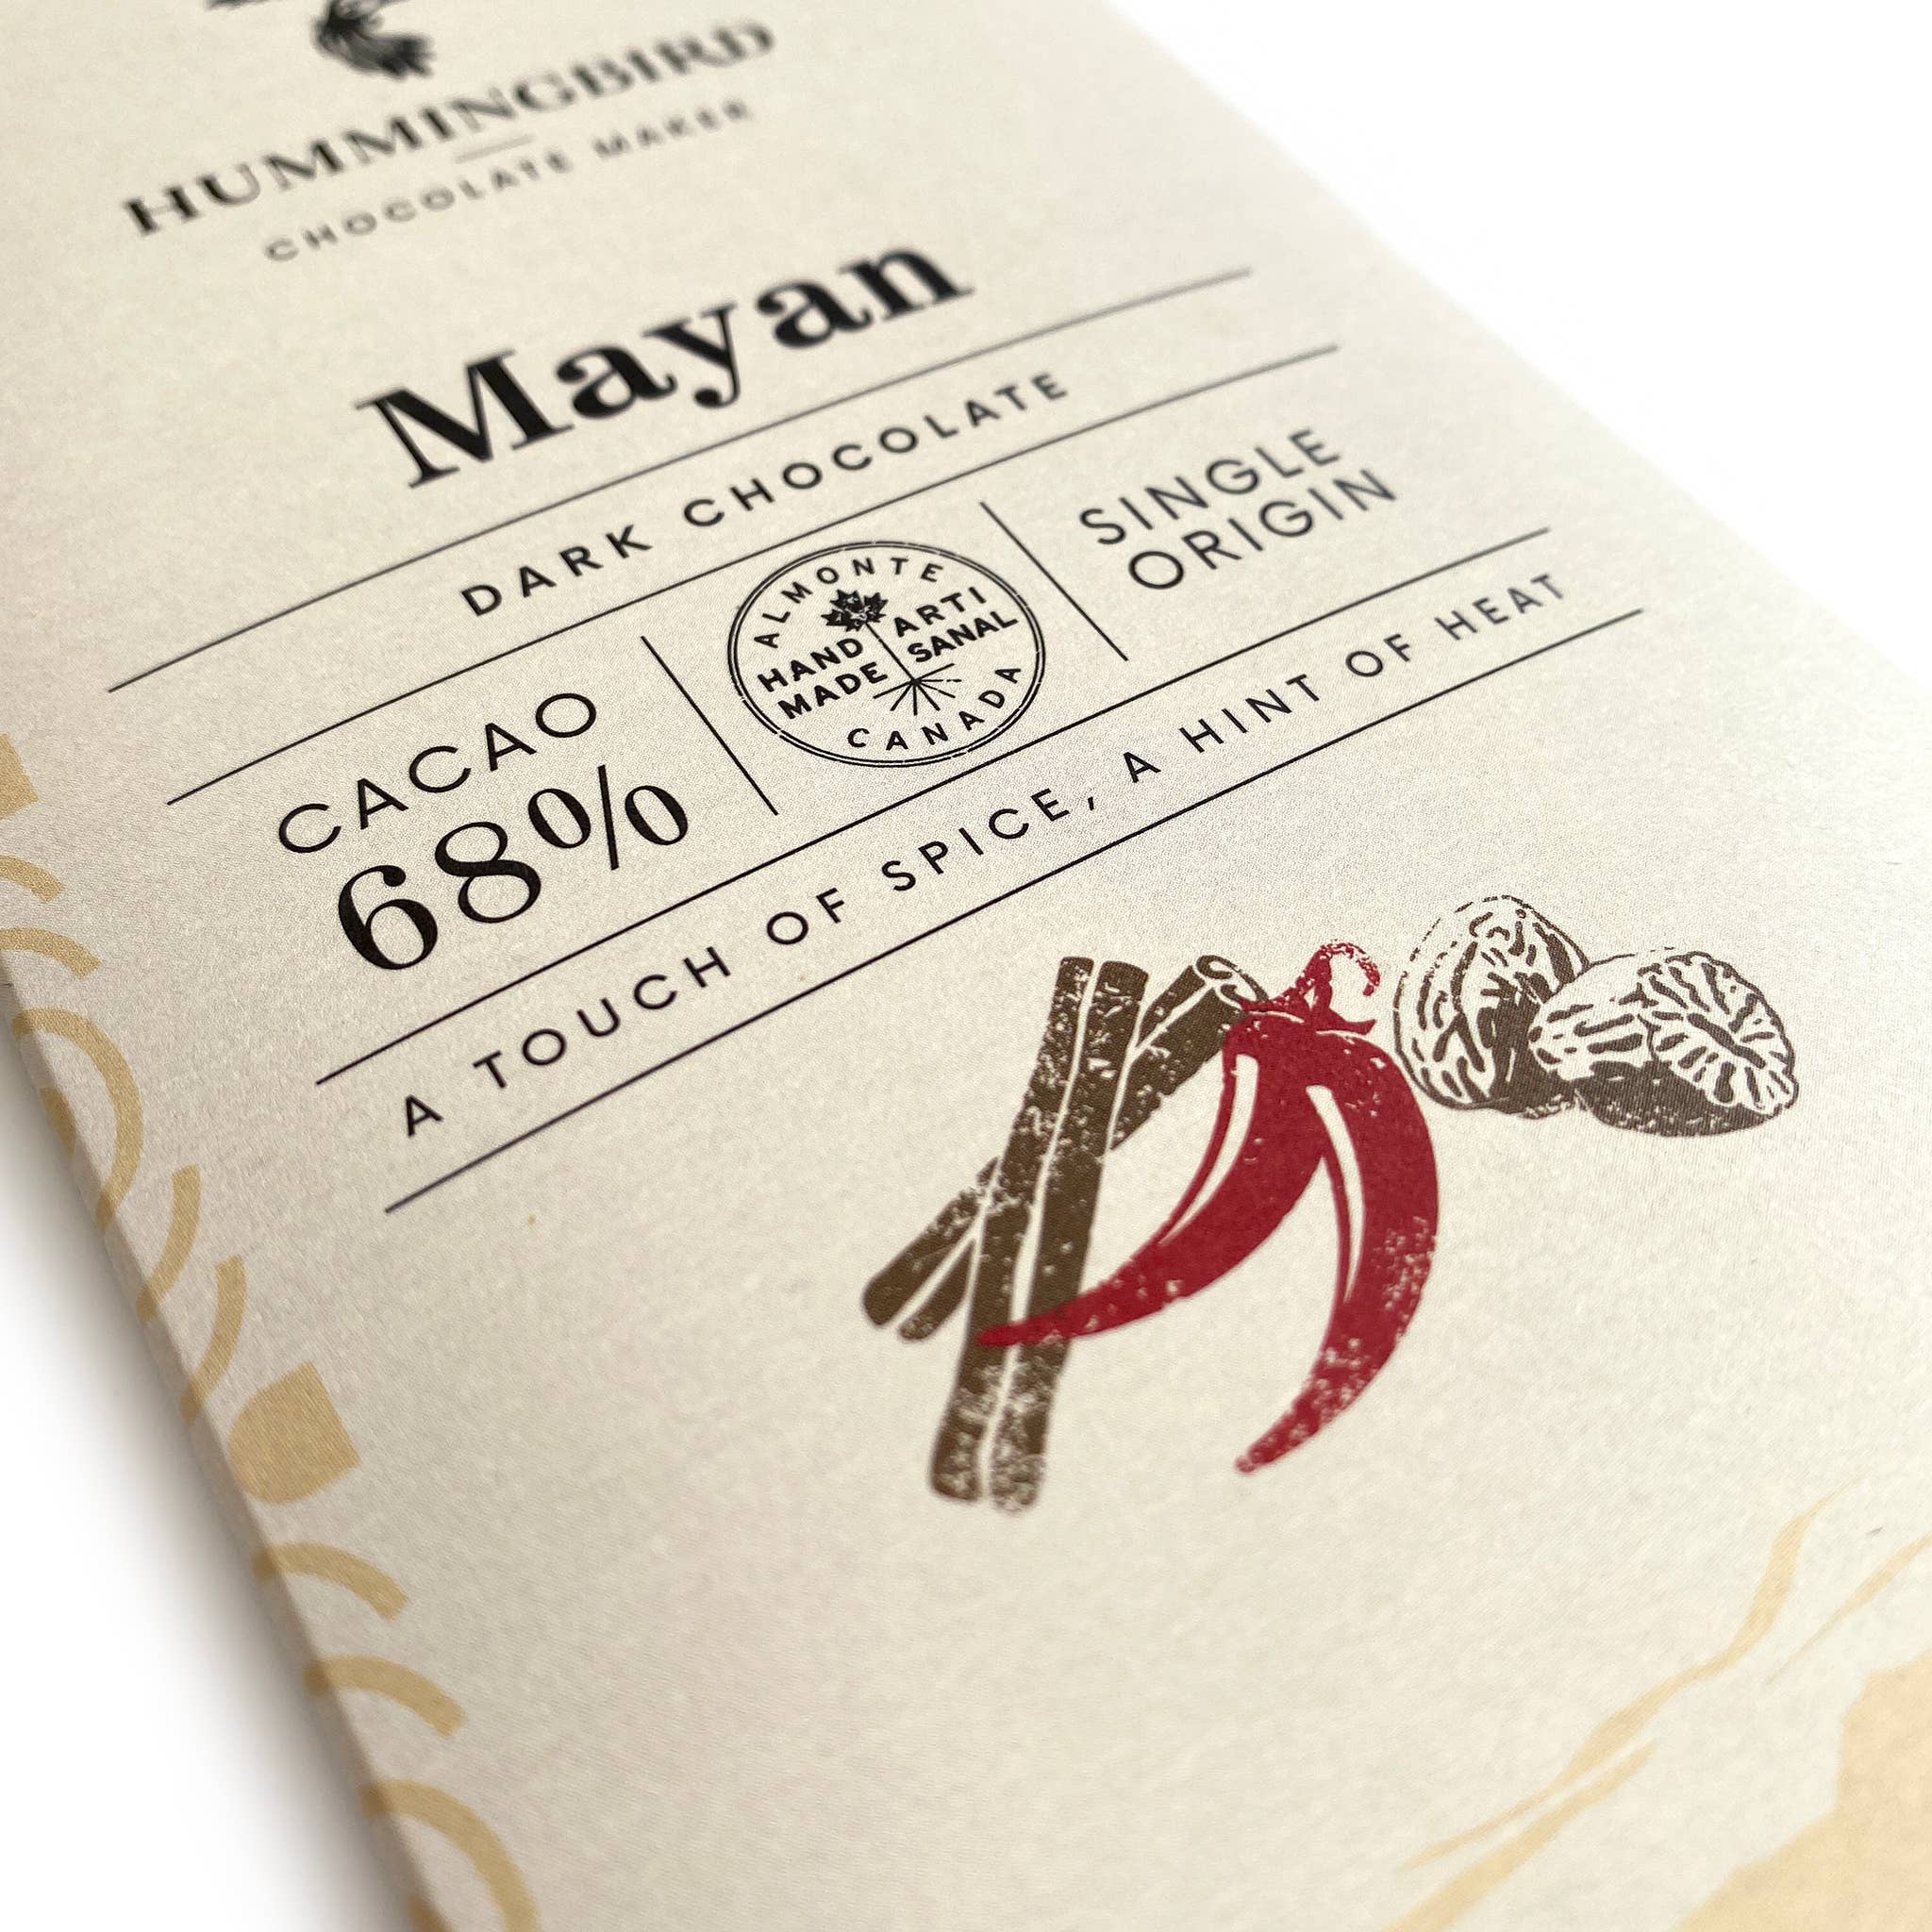 Chocolate Bar- Mayan 68% 60g